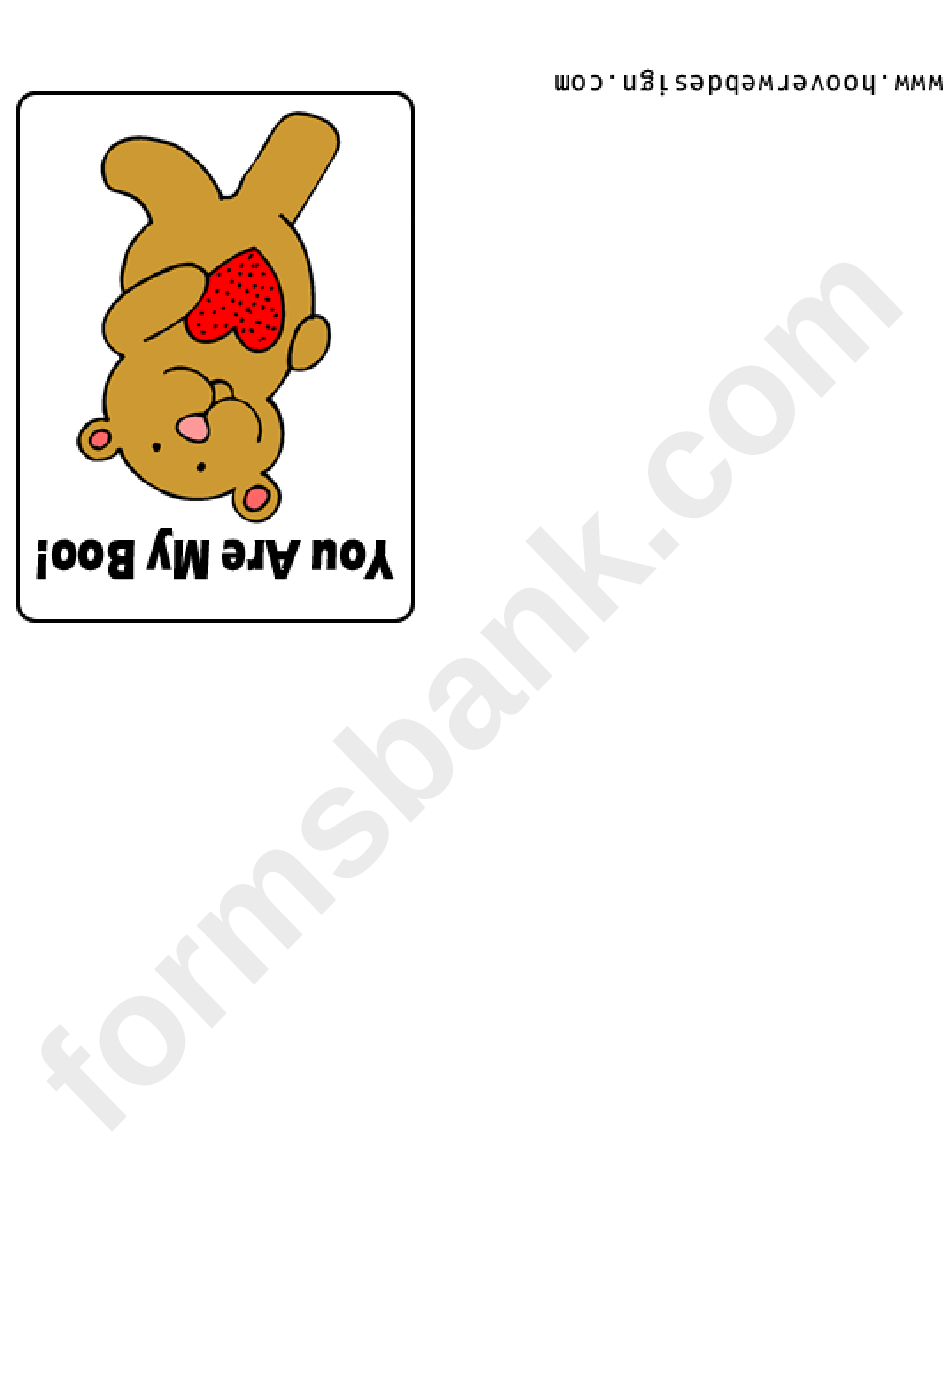 Teddy Bear With A Heart Valentine Card Template